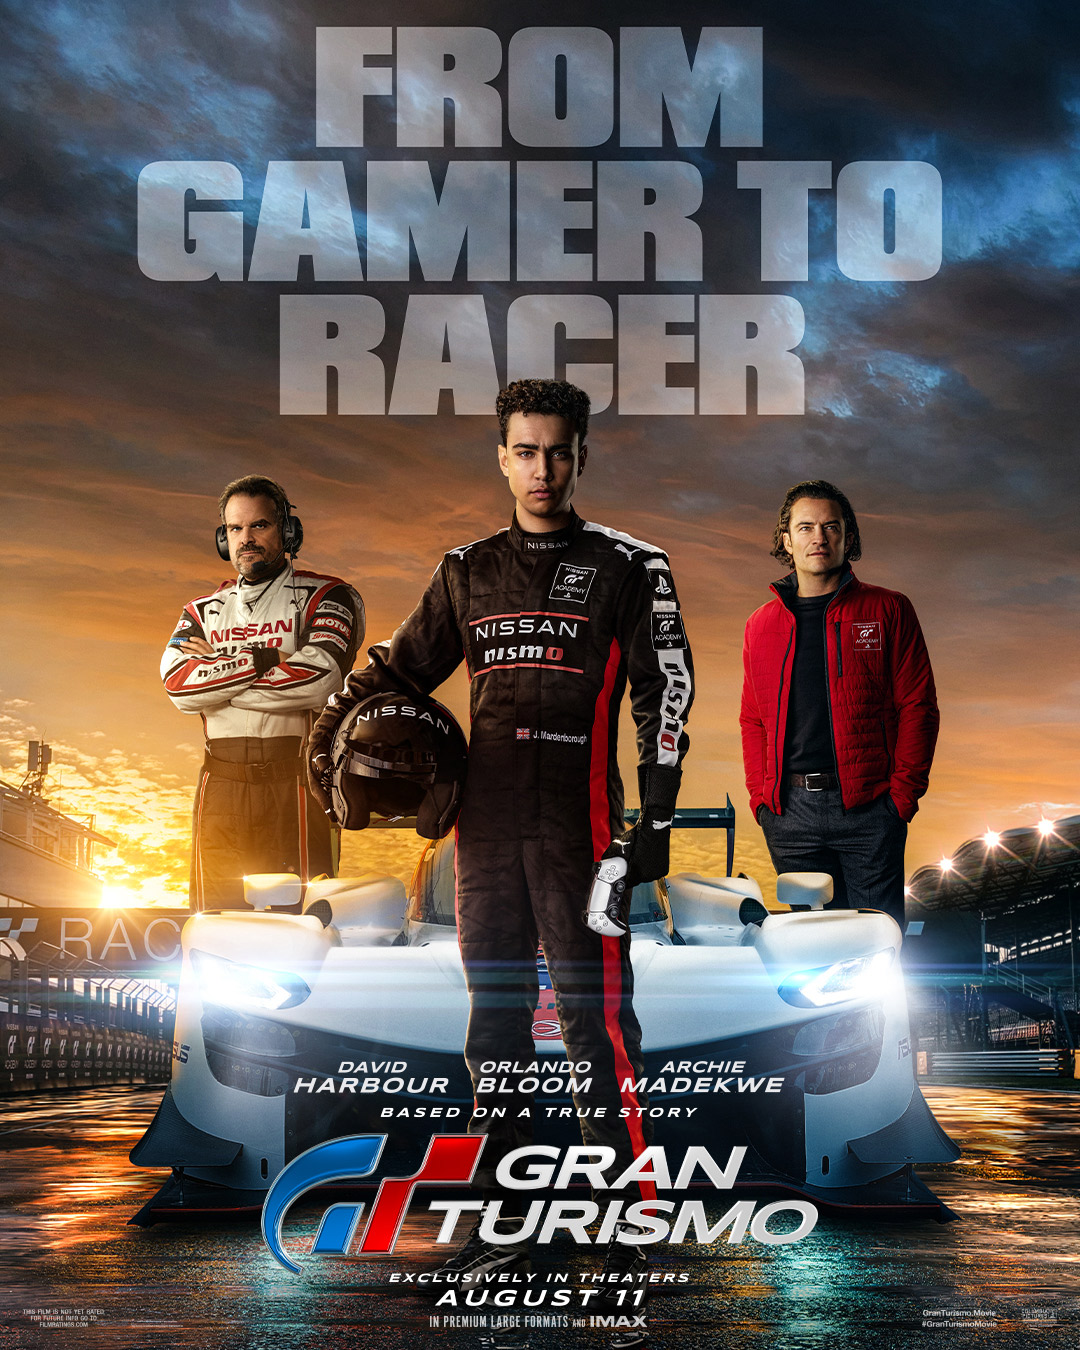 Nissan faz competição de Gran Turismo para promover filme - Live Marketing